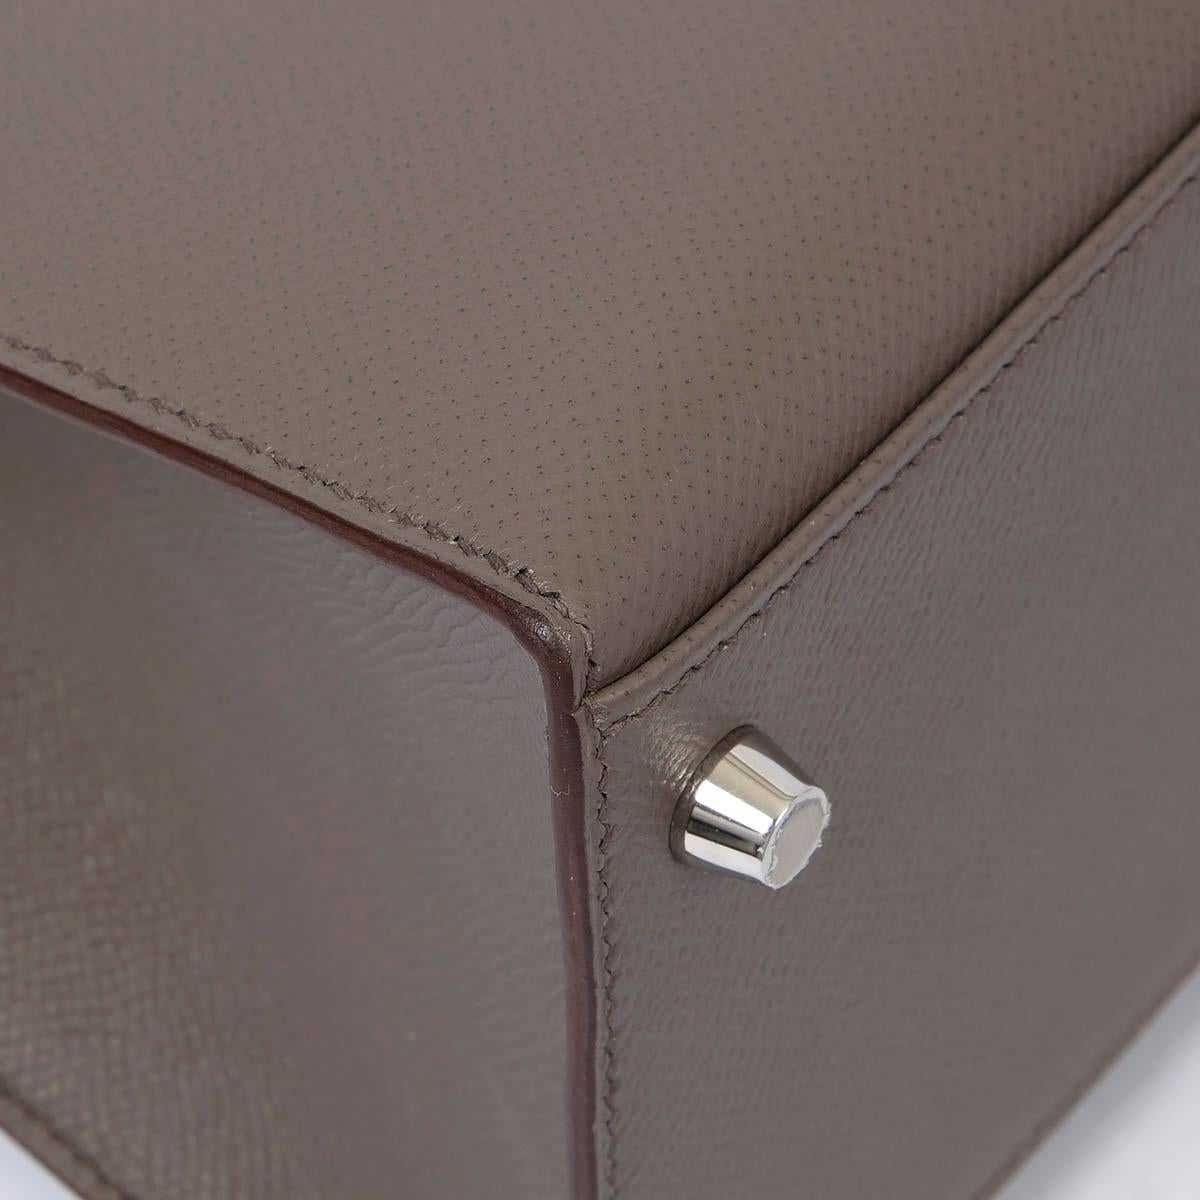 HERMES Etain grey Epsom leather KELLY 28 SELLIER Bag Phw 5